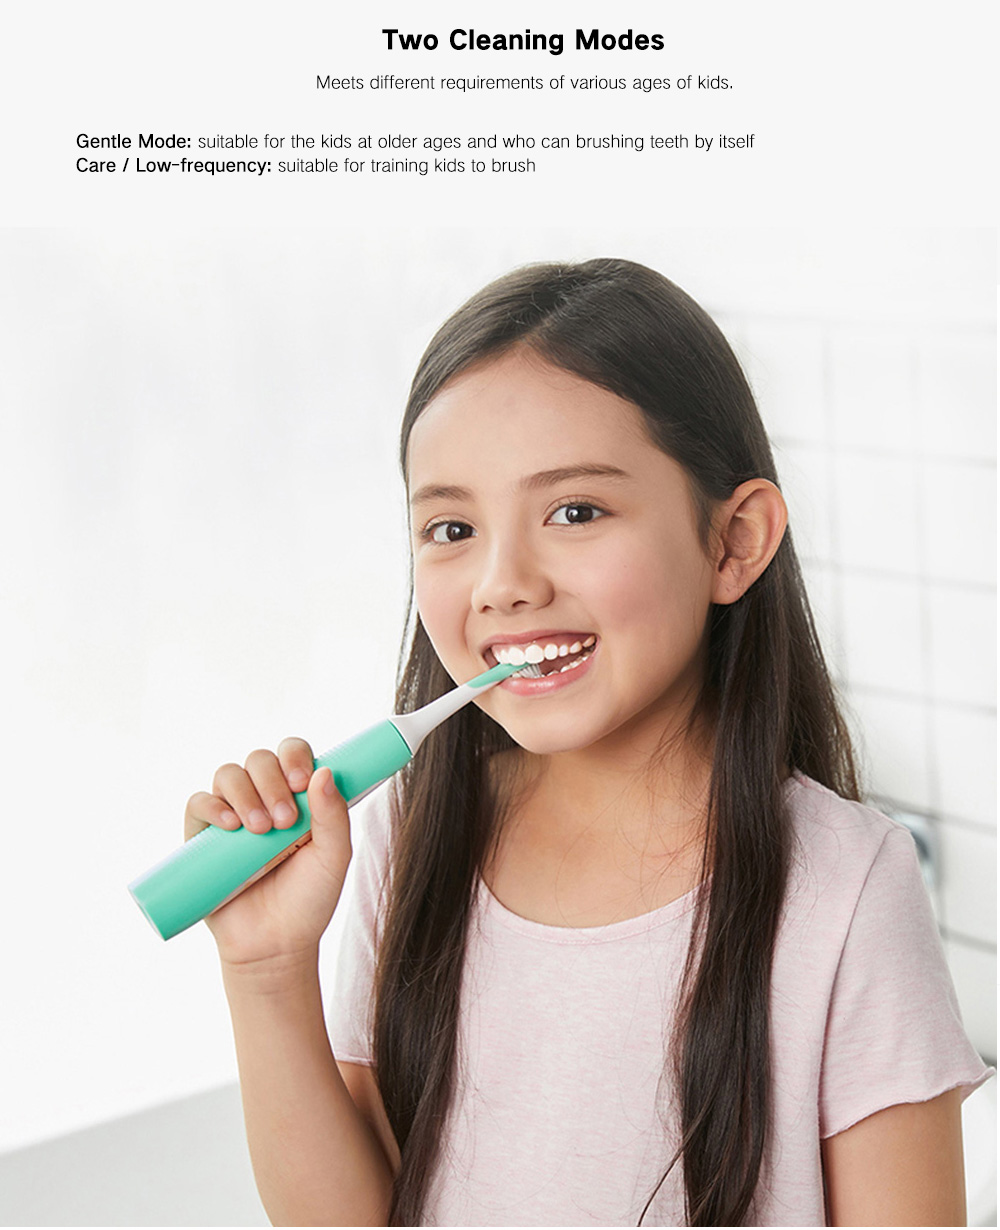 SOOCAS C1 Cute Waterproof Electric Toothbrush for Kids